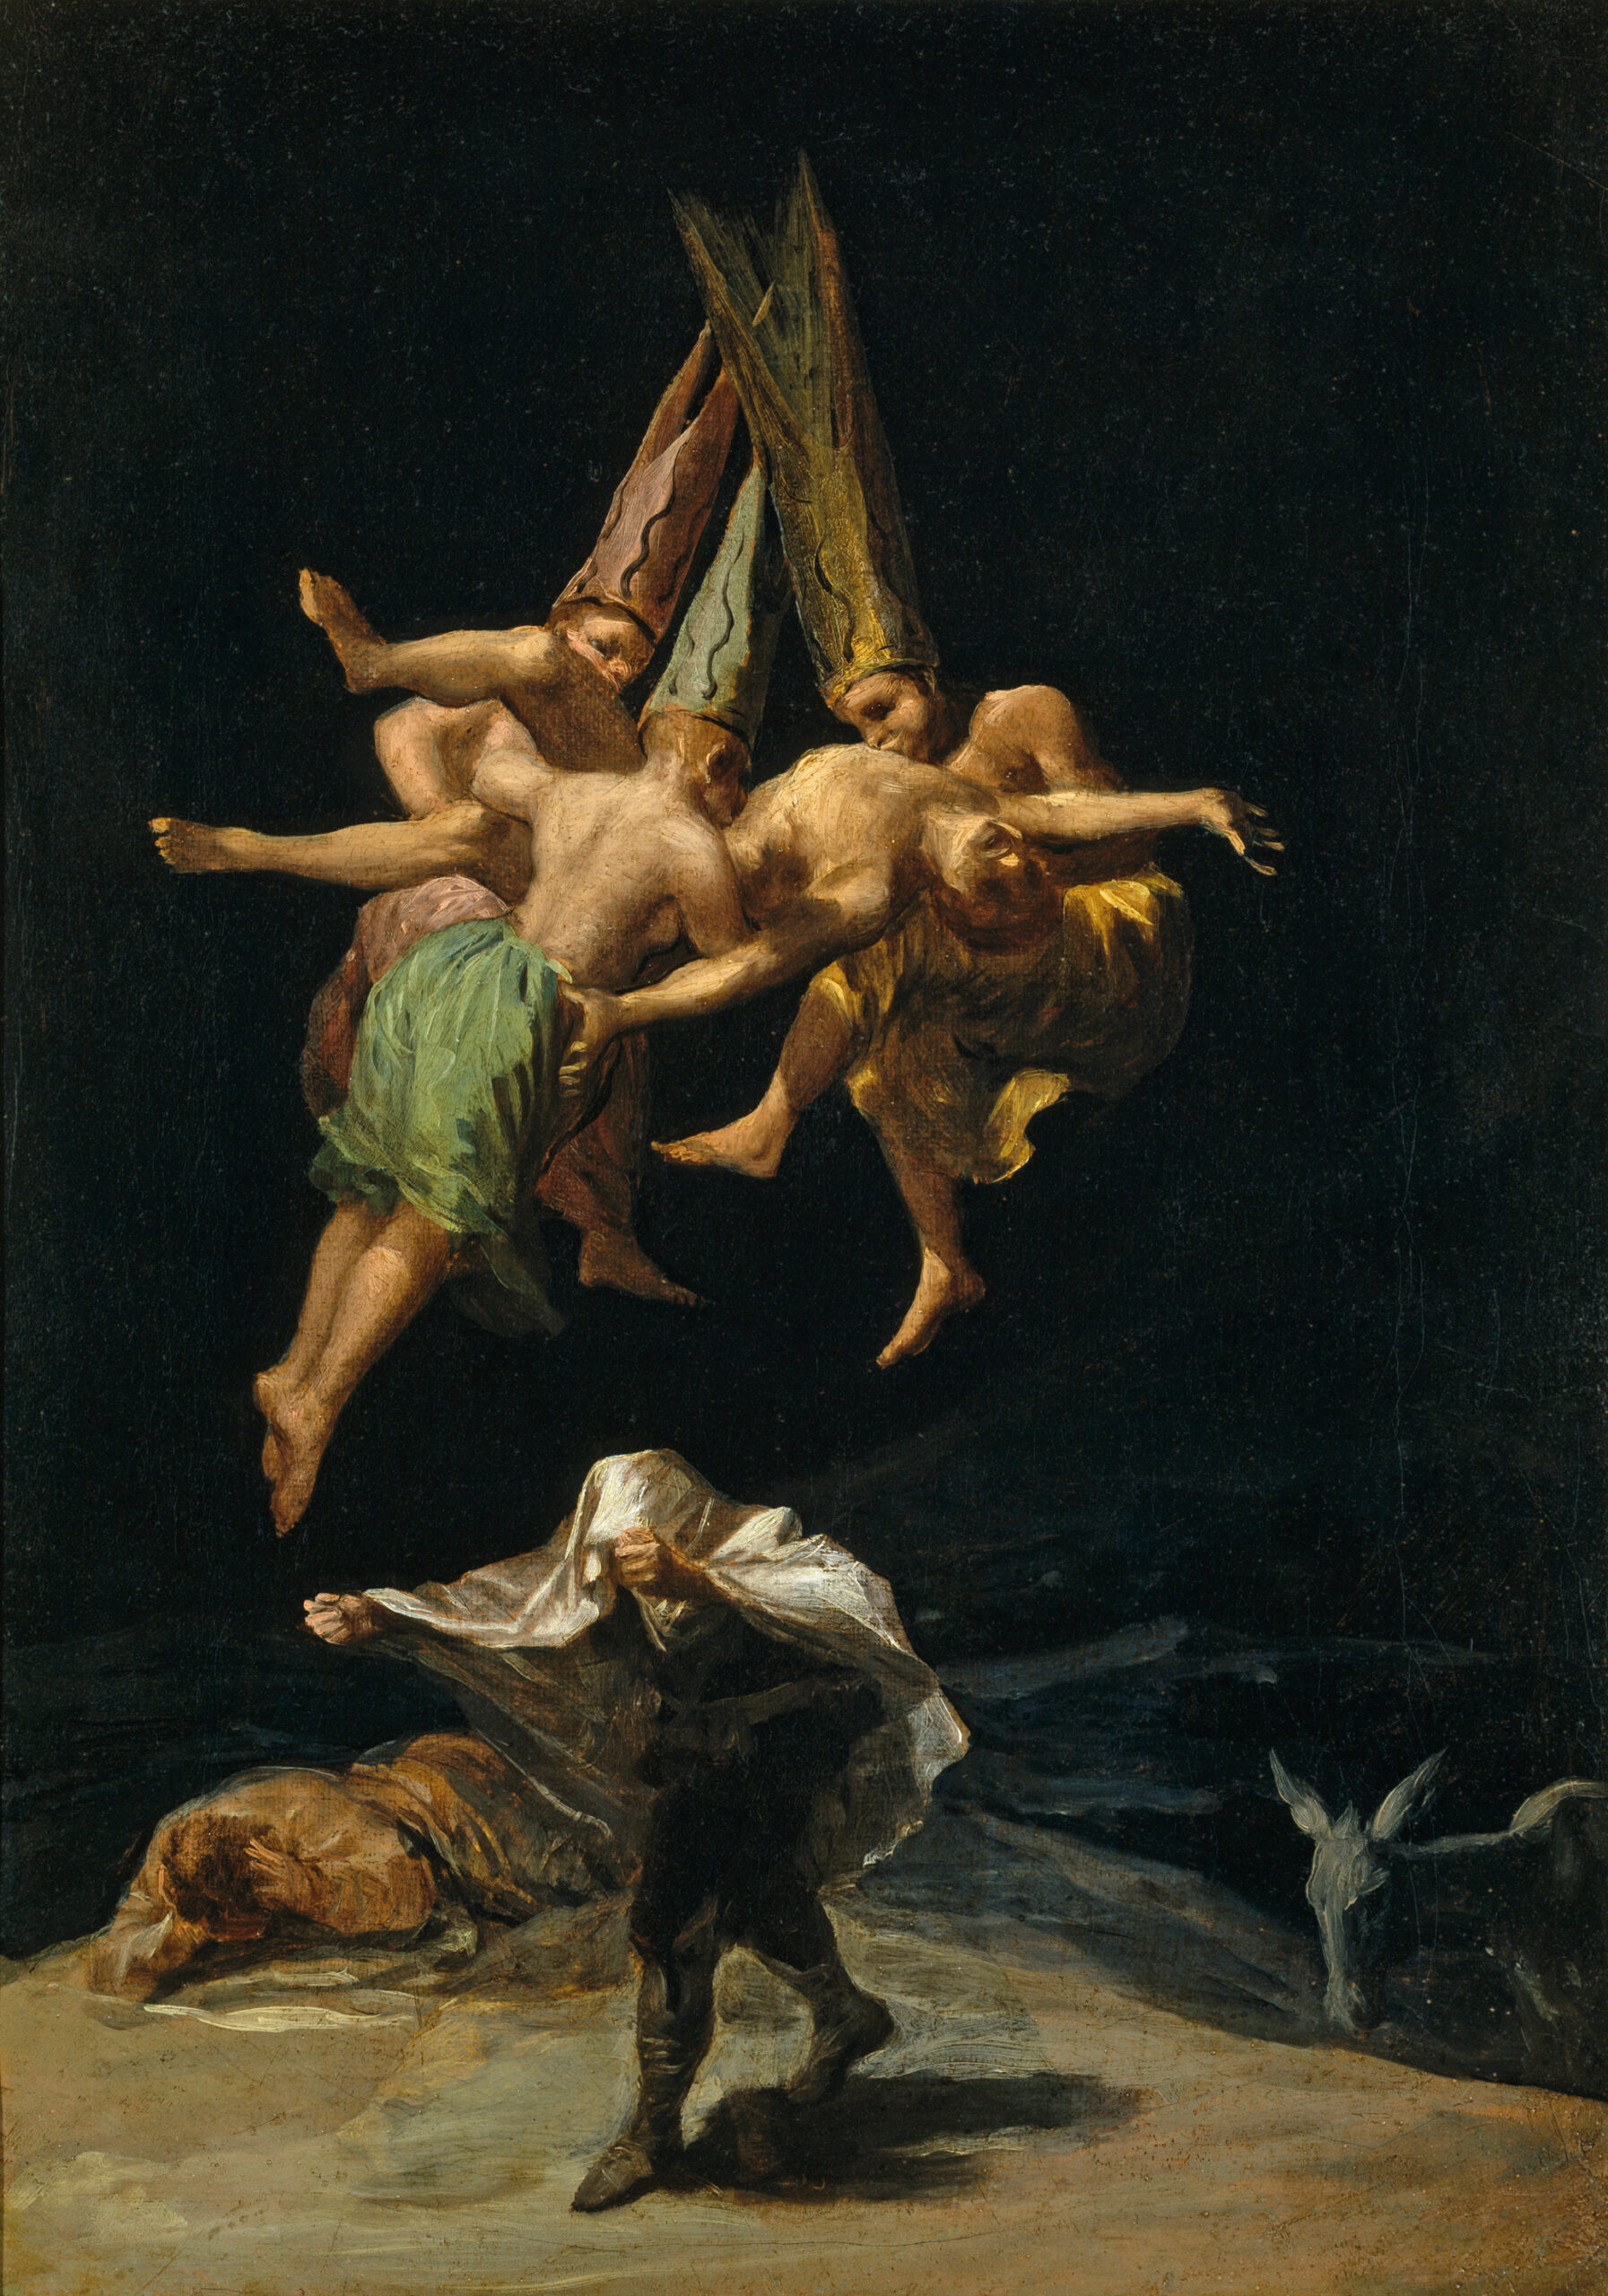 Epicentre Films Affiche L'Ombre de Goya